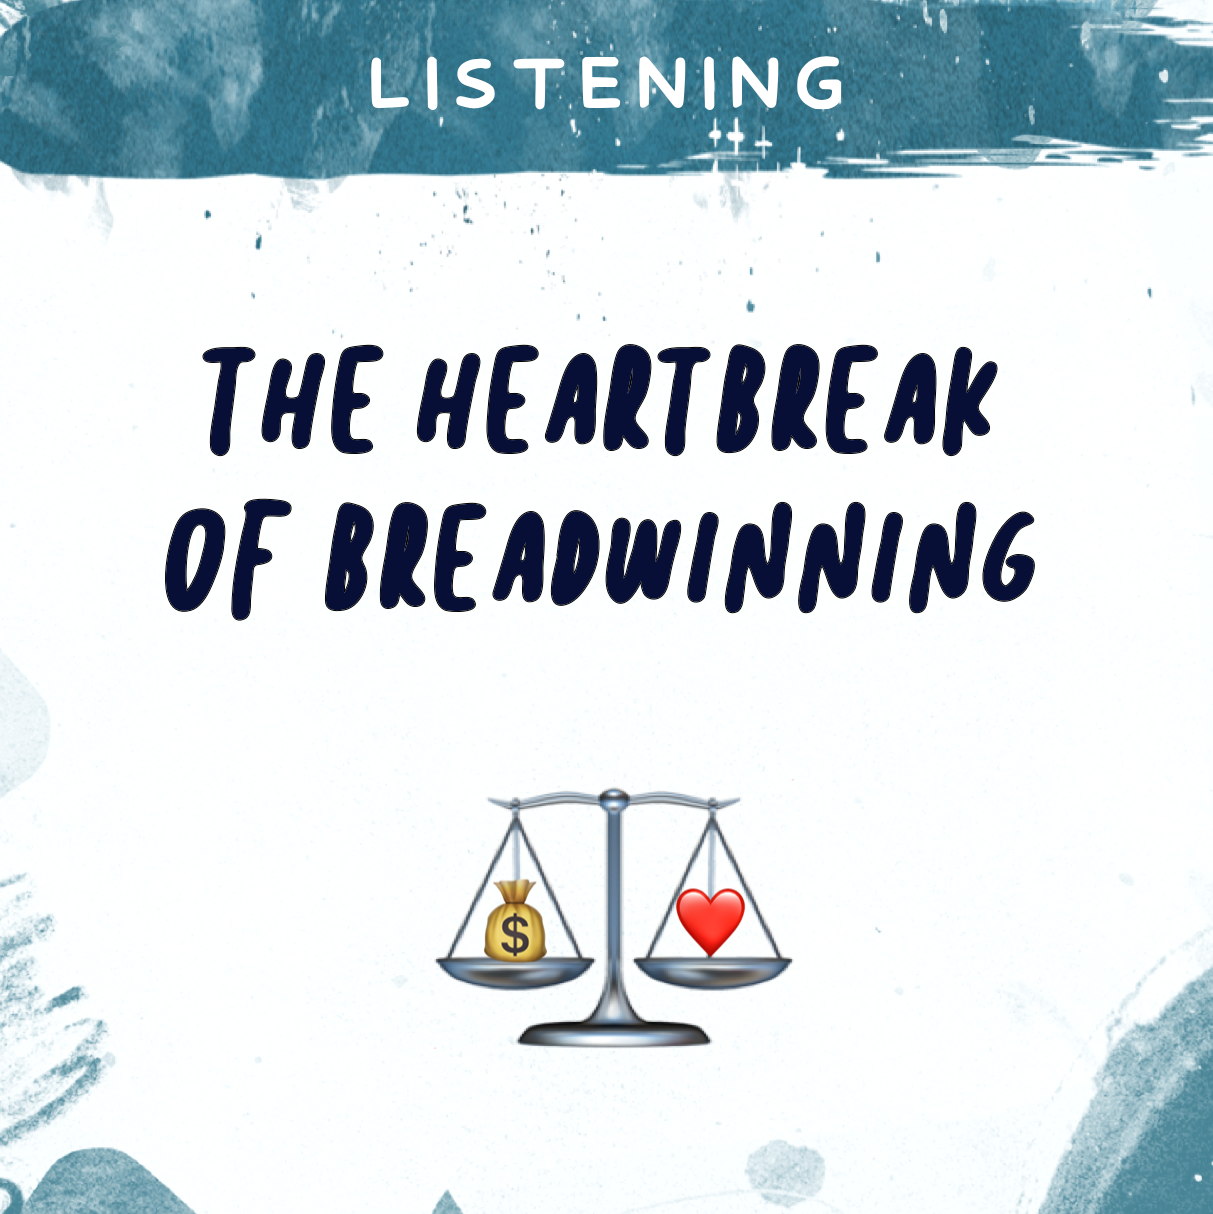 The Heartbreak of Breadwinning